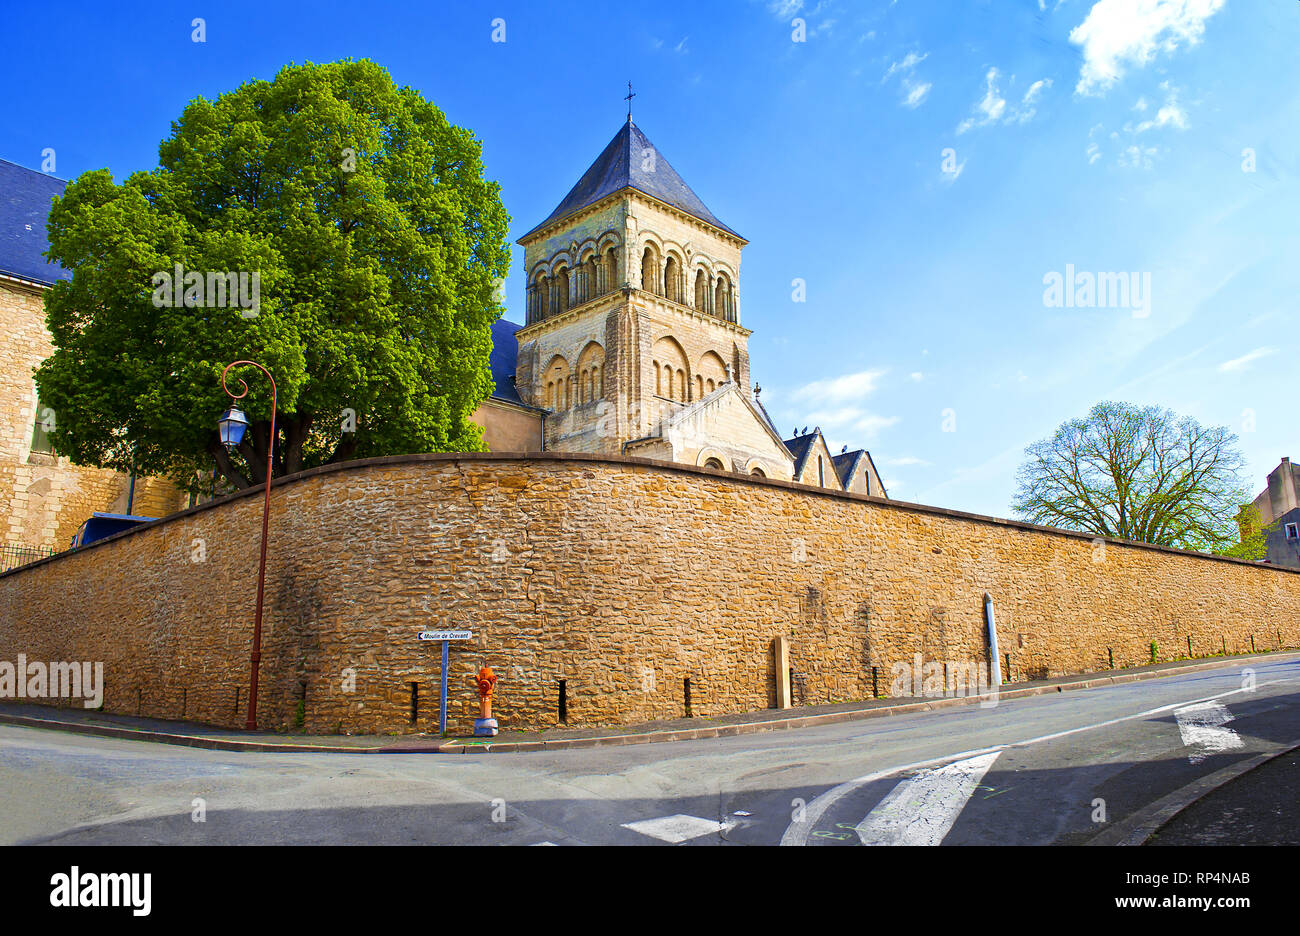 Kirche Saint-Laon und umgebende Mauer in einer kleinen Stadt Thouars, Frankreich. Hoher Turm mit blauem Dach. Warme Frühling Morgen, vibrant blue sky, einer riesigen tr Stockfoto